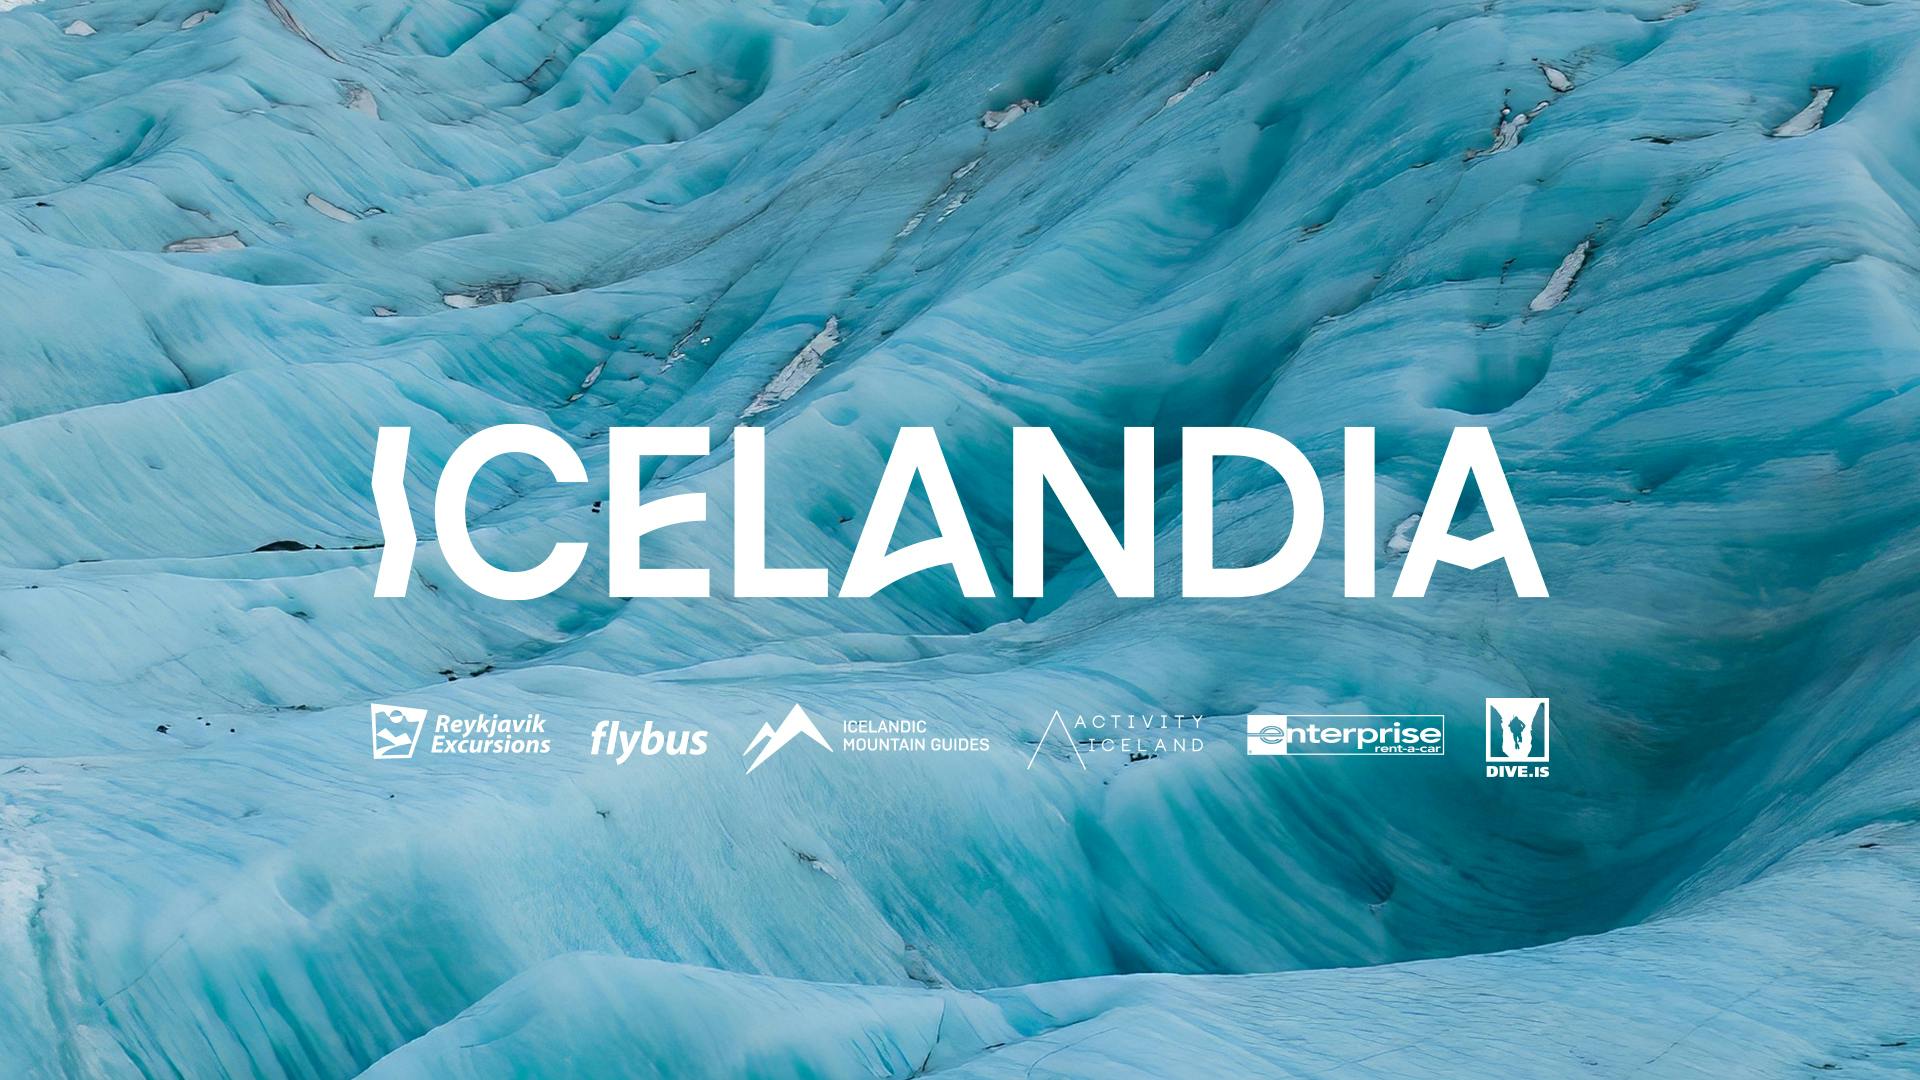 Icelandia web graphic